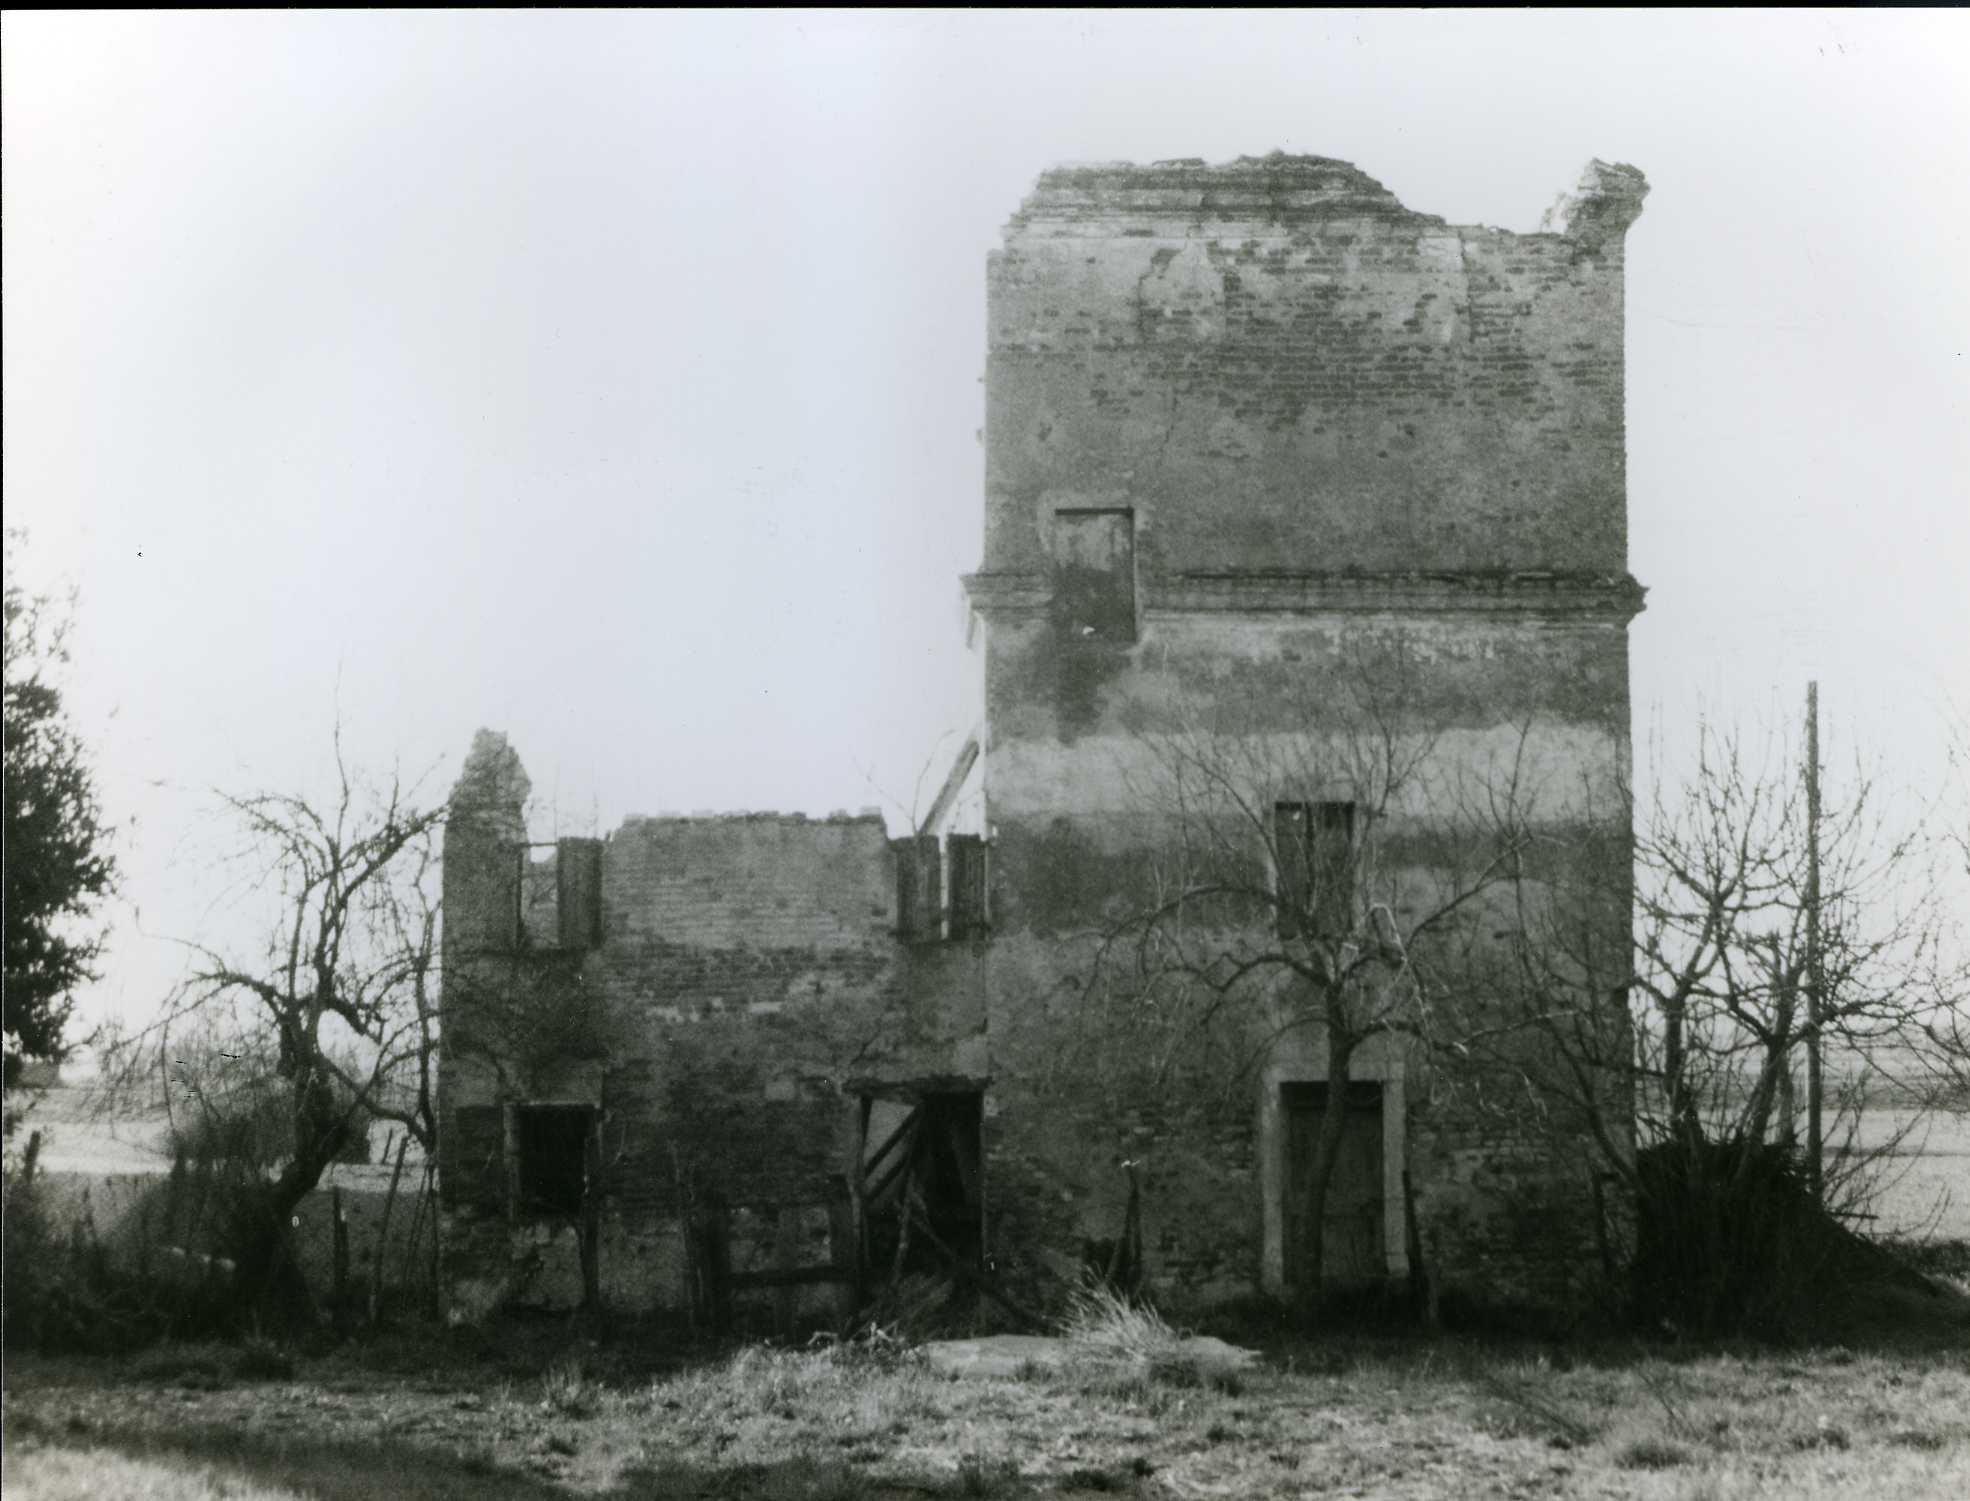 torre, colombara - Camisano Vicentino (VI)  (XVIII, seconda metà)